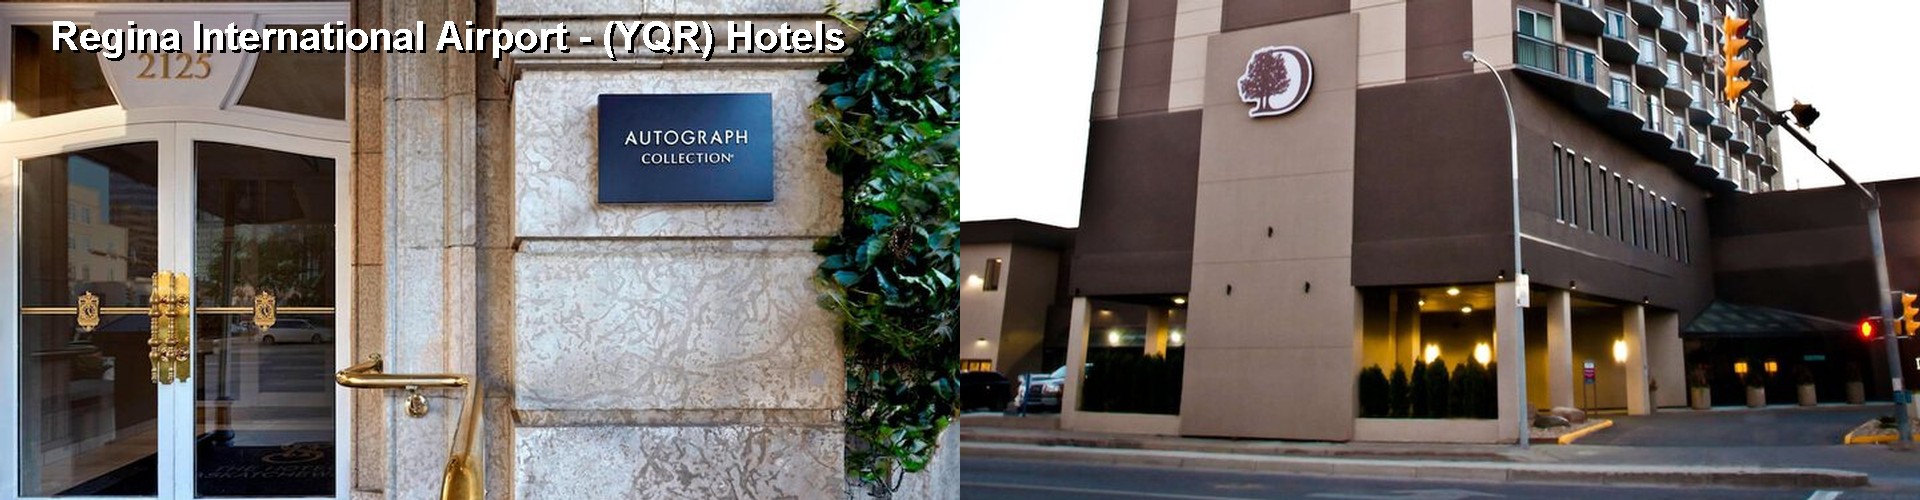 5 Best Hotels near Regina International Airport - (YQR)